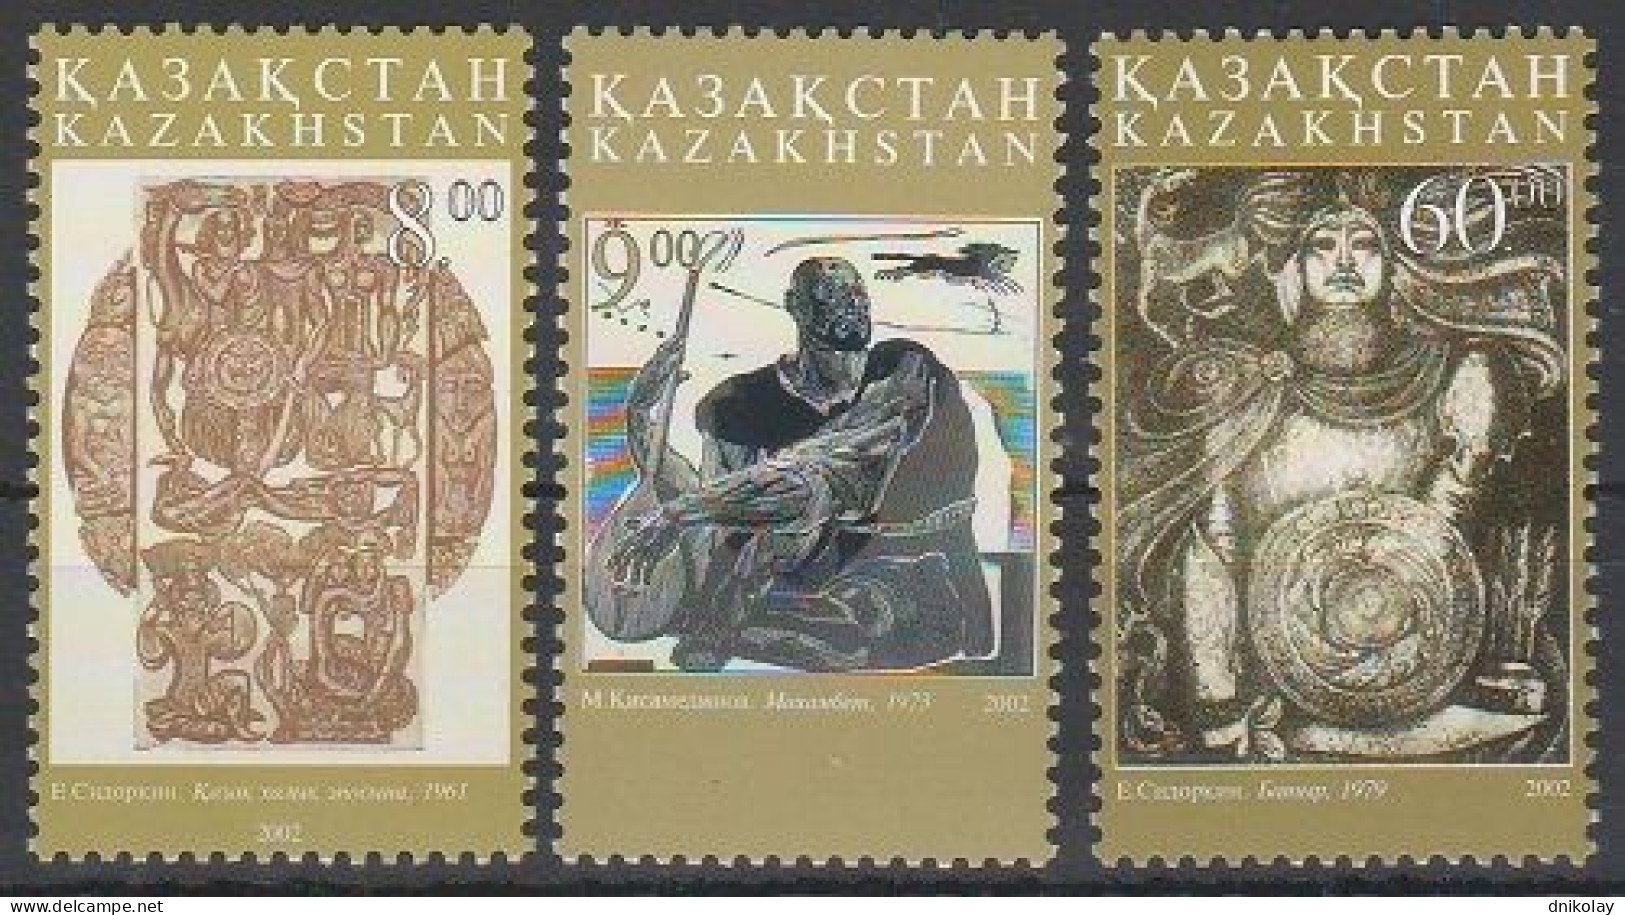 2002 393 Kazakhstan Art MNH - Kazakhstan